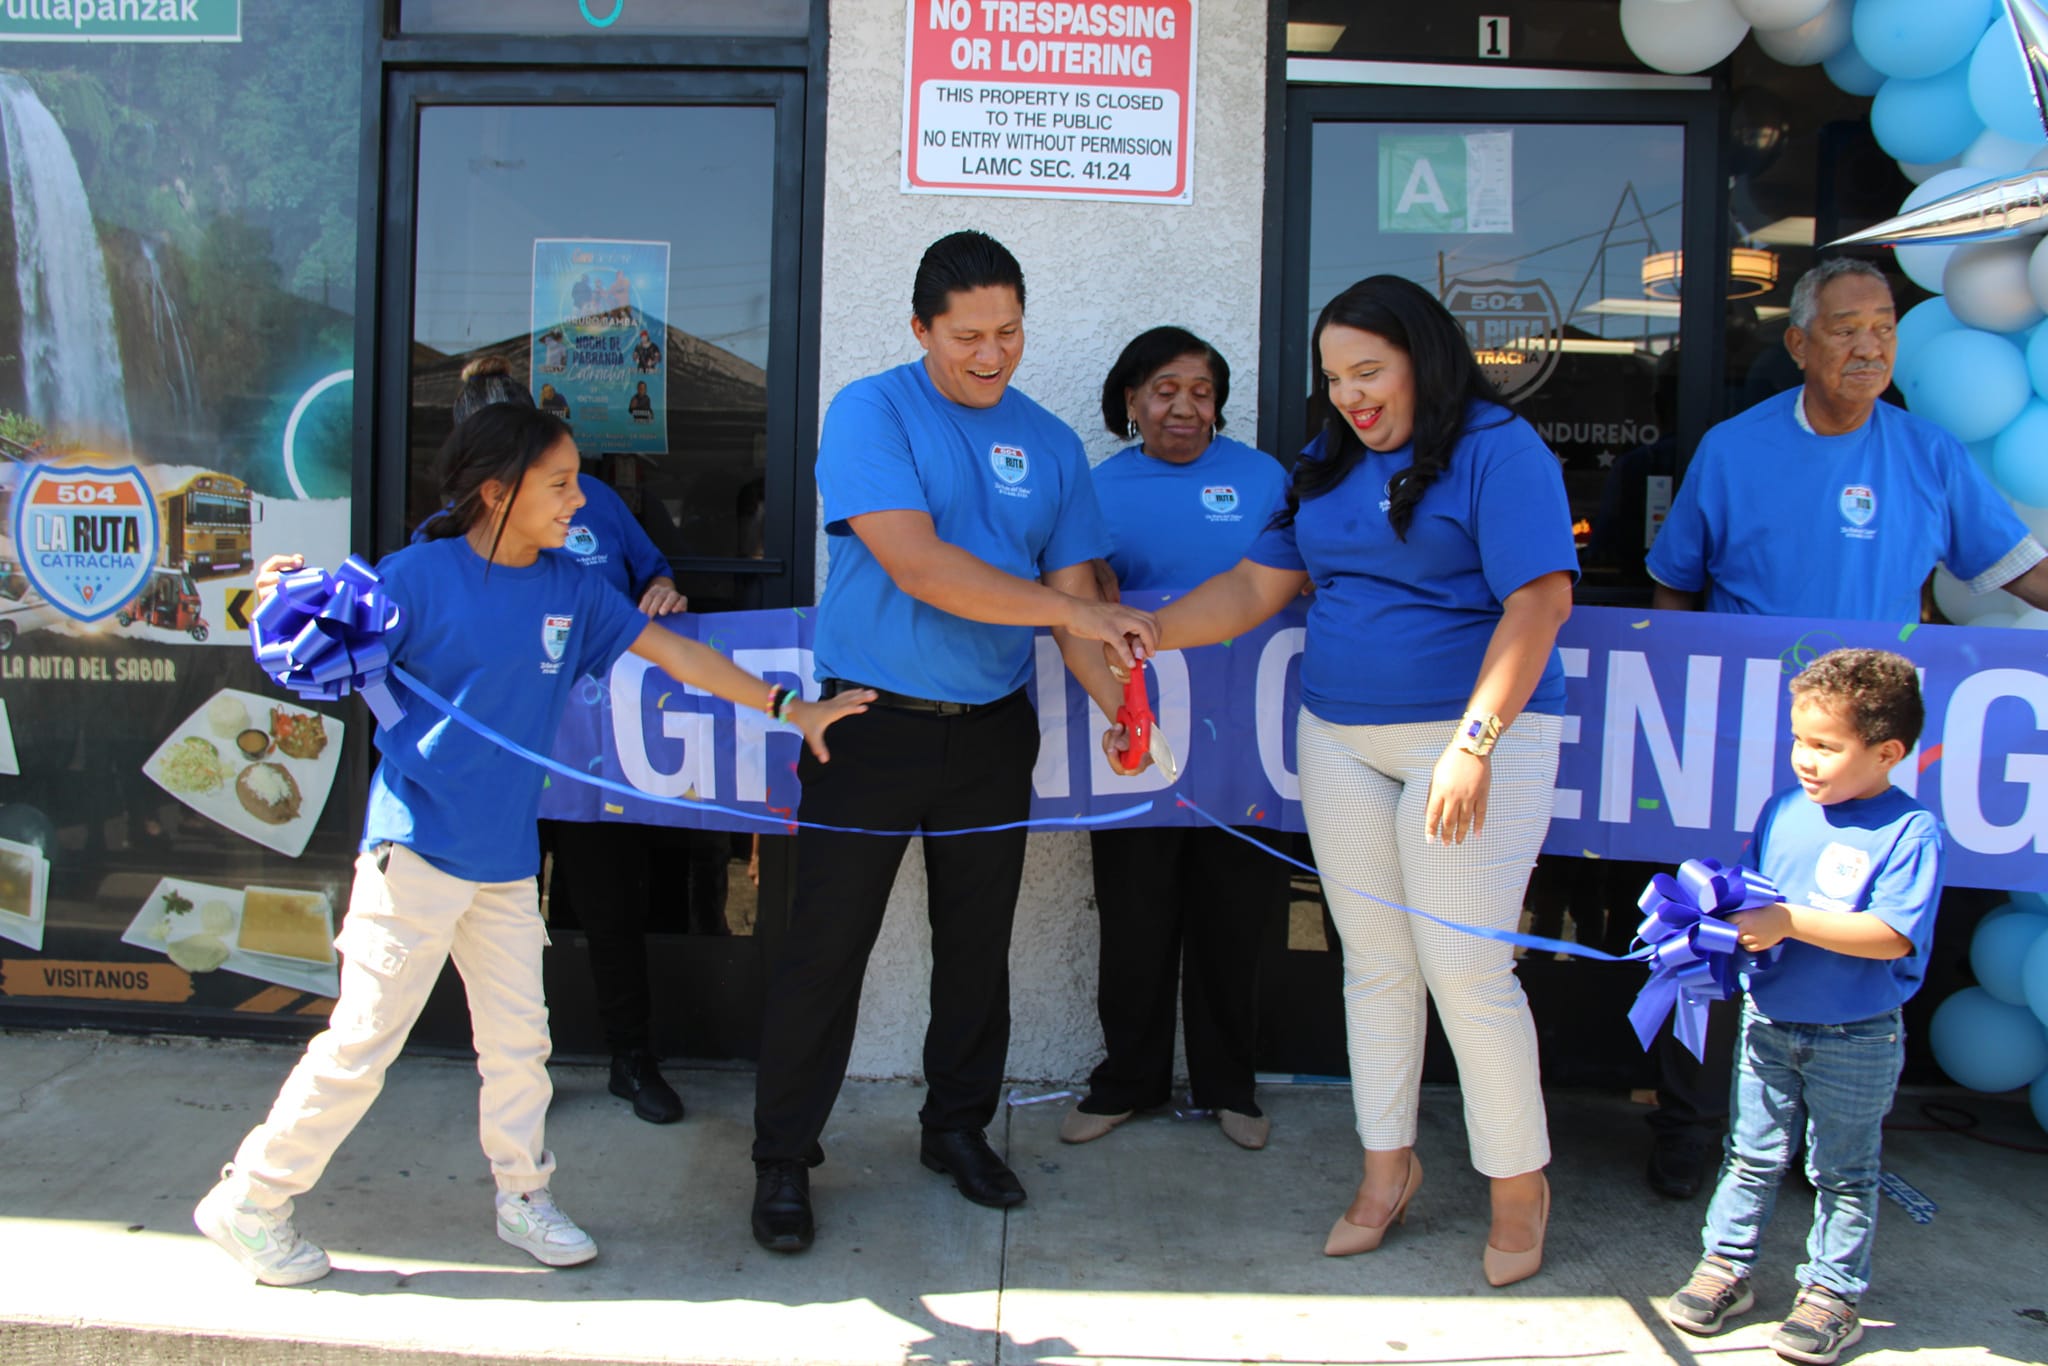 Hondureños abren su cuarto negocio en Los Ángeles: «La Ruta Catracha»